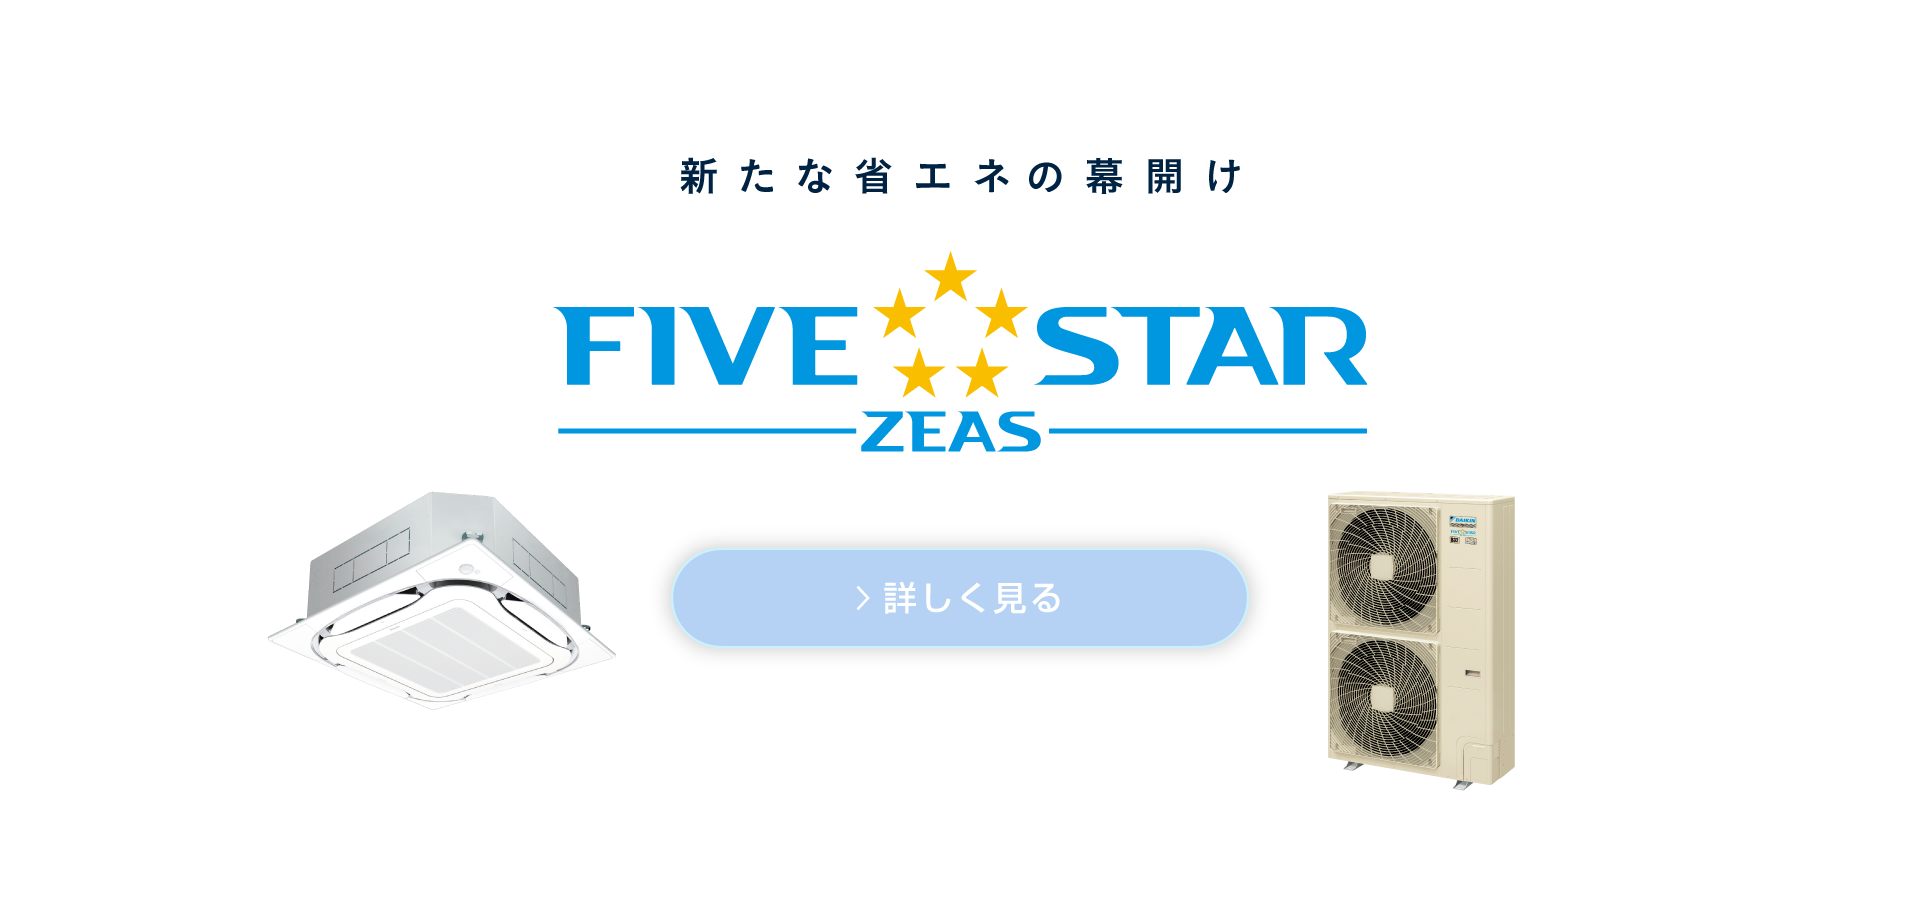 新たな省エネの幕開け。ダイキン史上最高の省エネシリーズ FIVE STAR ZEAS